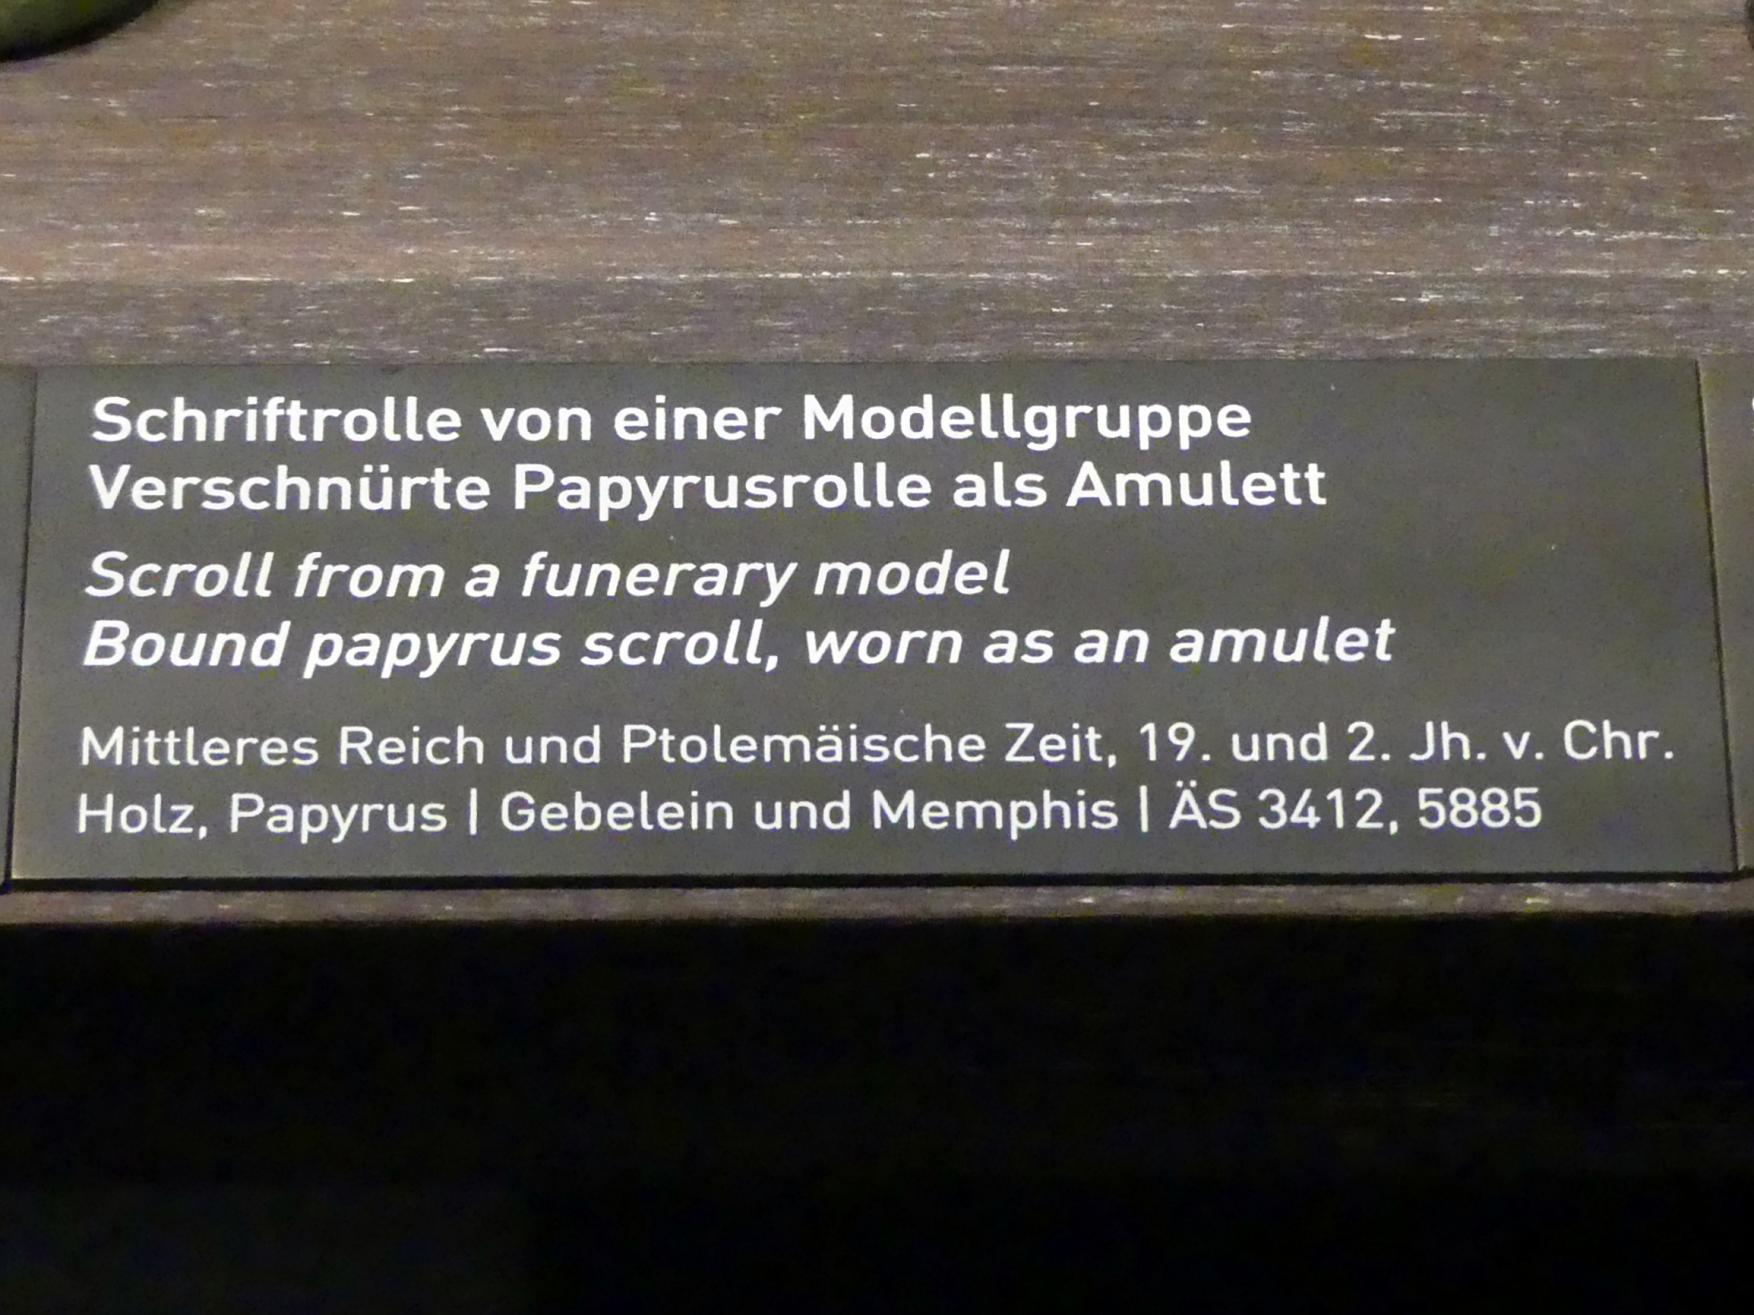 Schriftrolle von einer Modellgruppe, Mittleres Reich, 1678 - 1634 v. Chr., 1900 - 1800 v. Chr., Bild 2/2